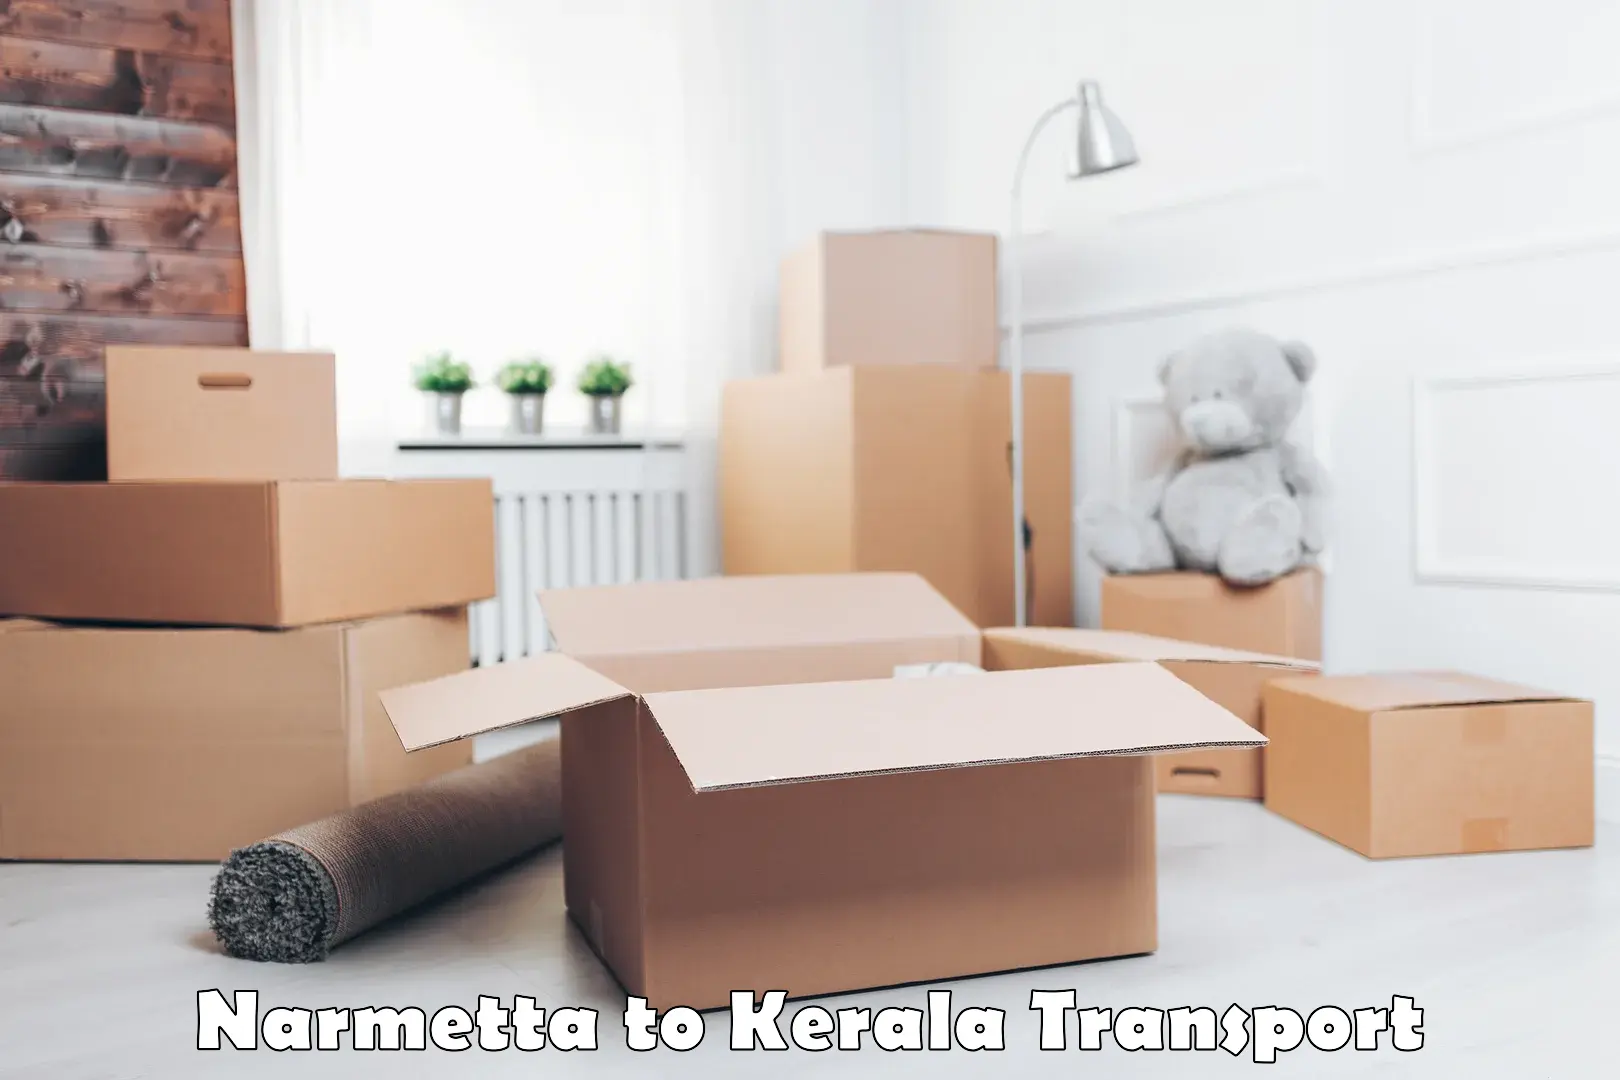 Road transport services Narmetta to Kothanalloor